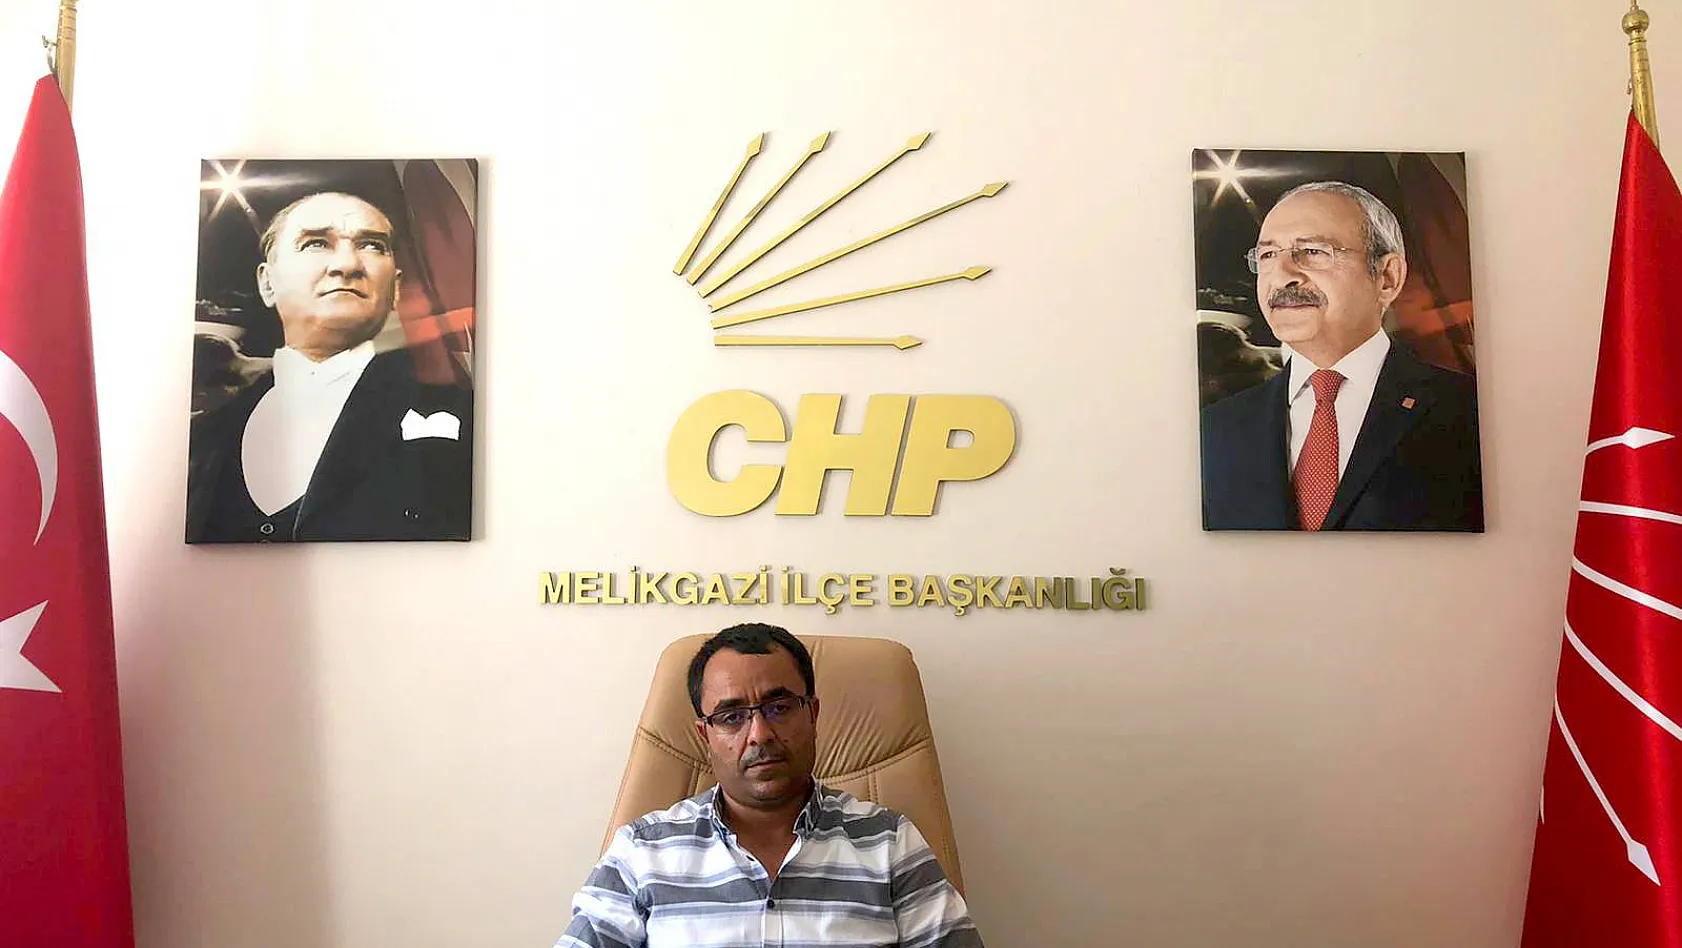 CHP Melikgazi İlçe Başkanı Yılboğa'dan, O Müdüre 'Siyaset yapacaksan istifa et' çağrısı